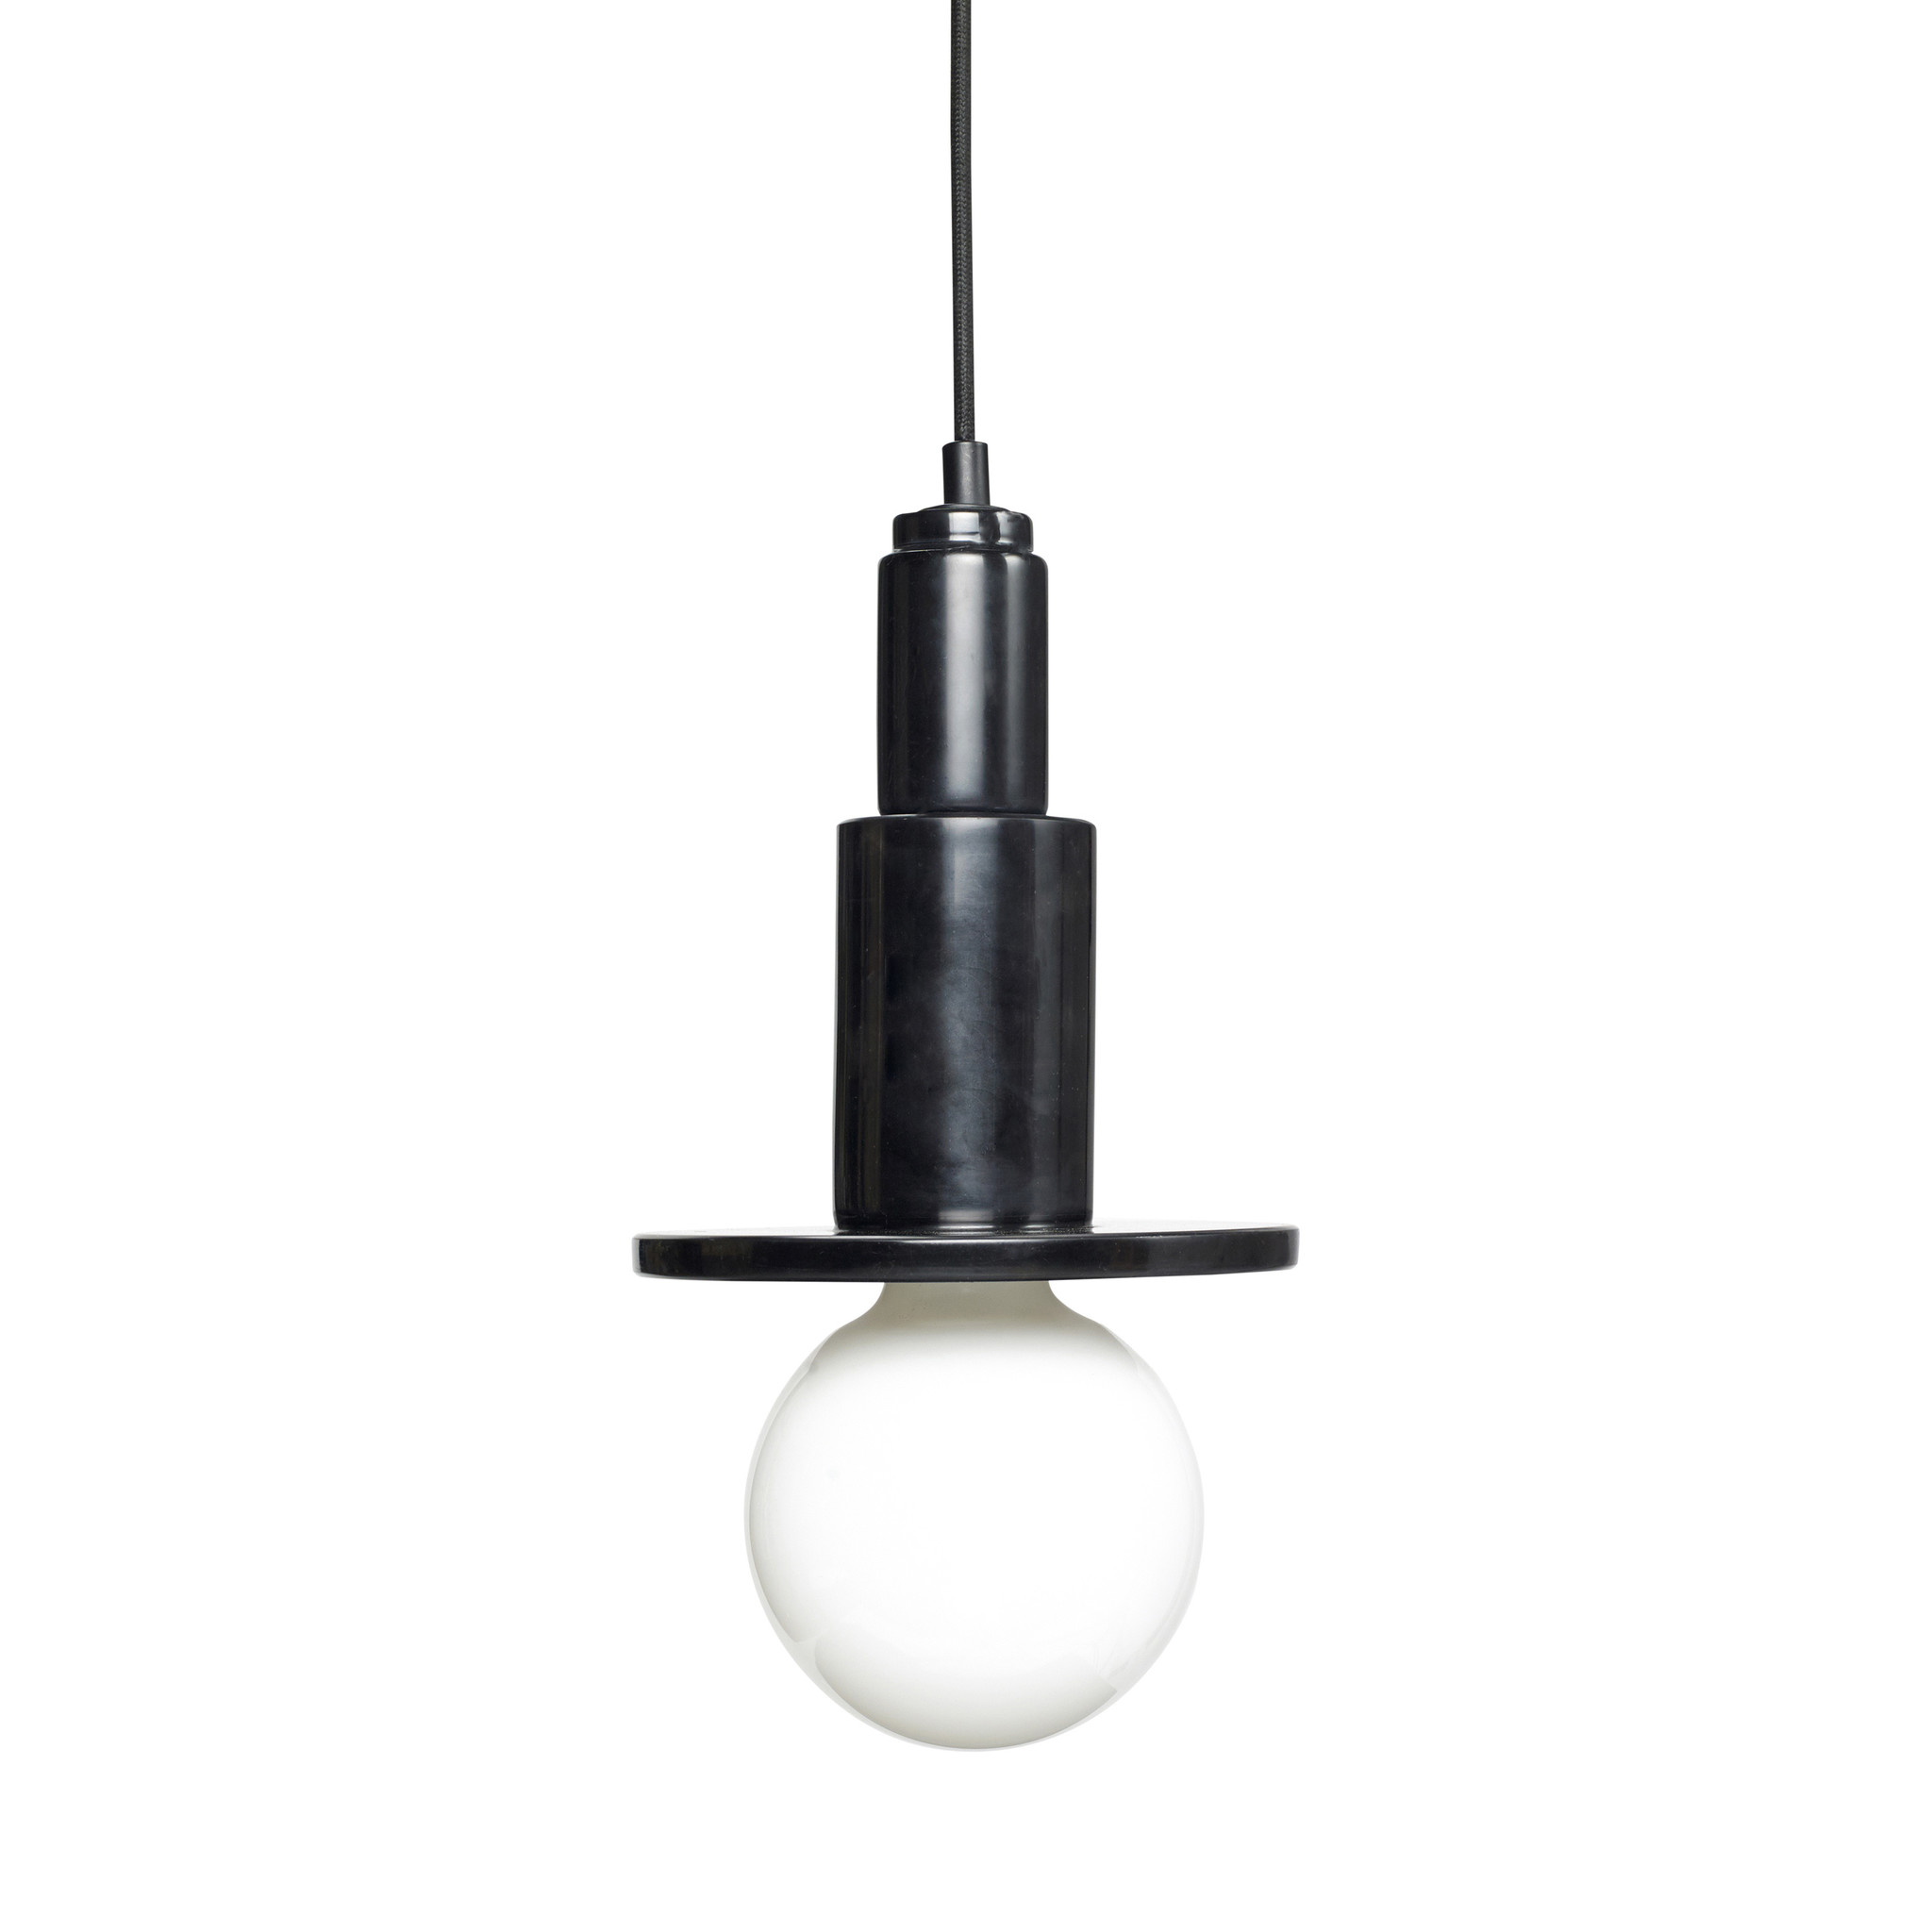 Hubsch Lamp met lamp, marmer, zwart-990815-5712772068977